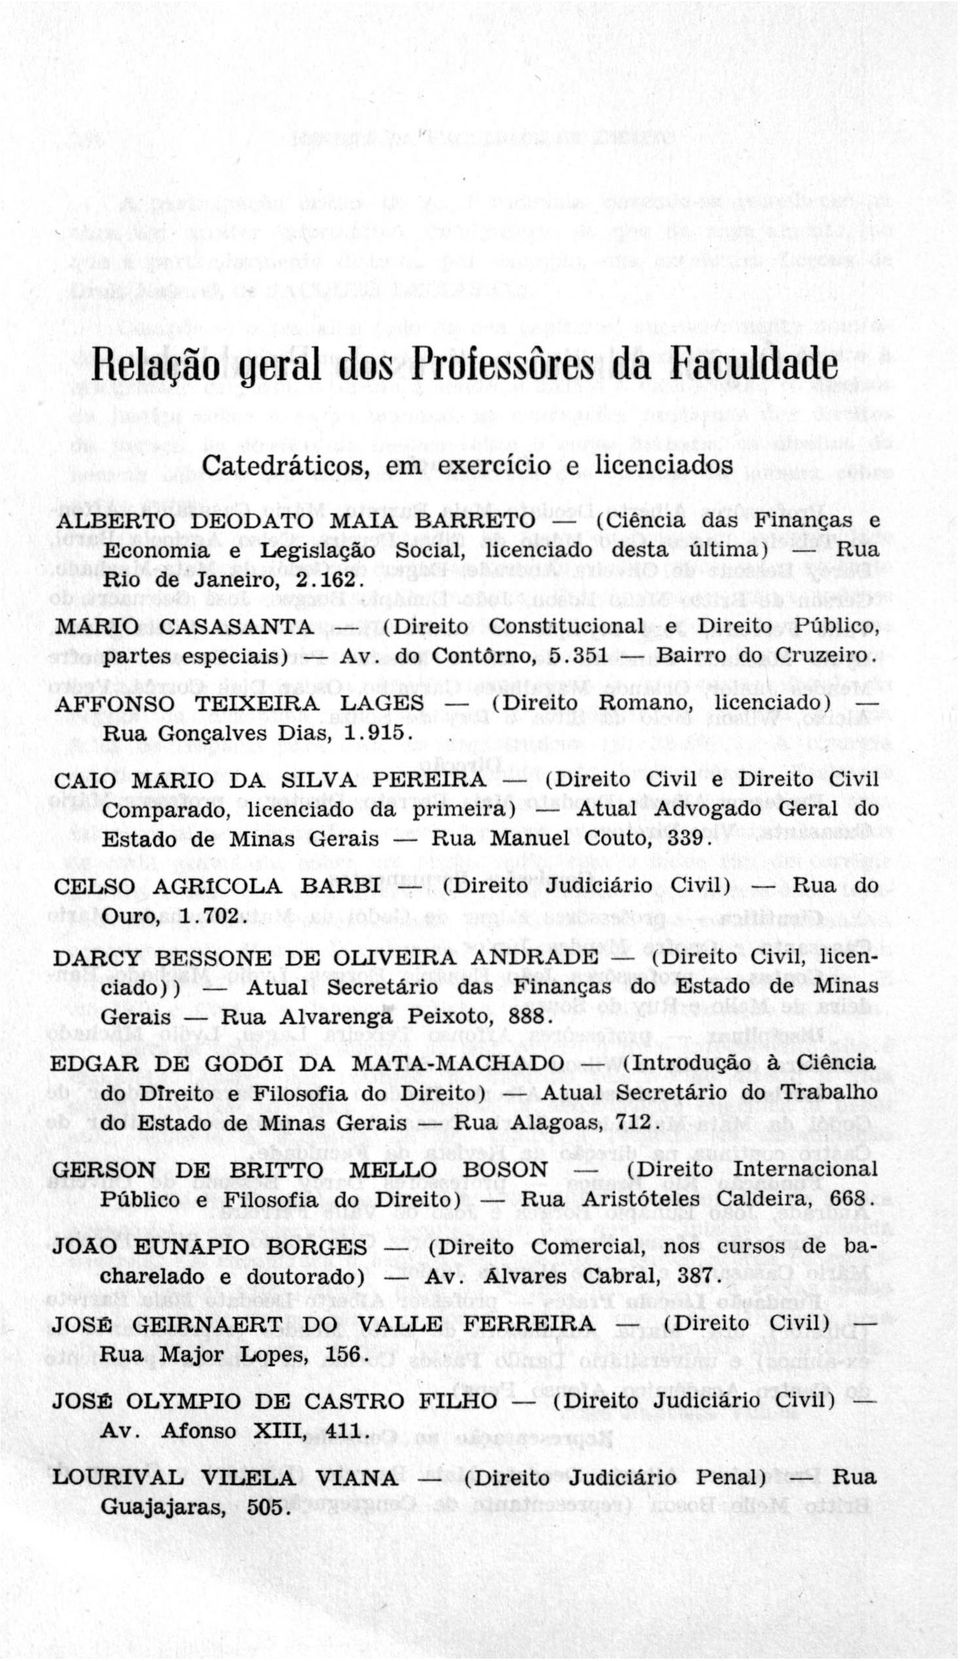 AFFONSO TE IX E IR A LAGES (Direito Romano, licenciado) Rua Gonçalves Dias, 1.915.